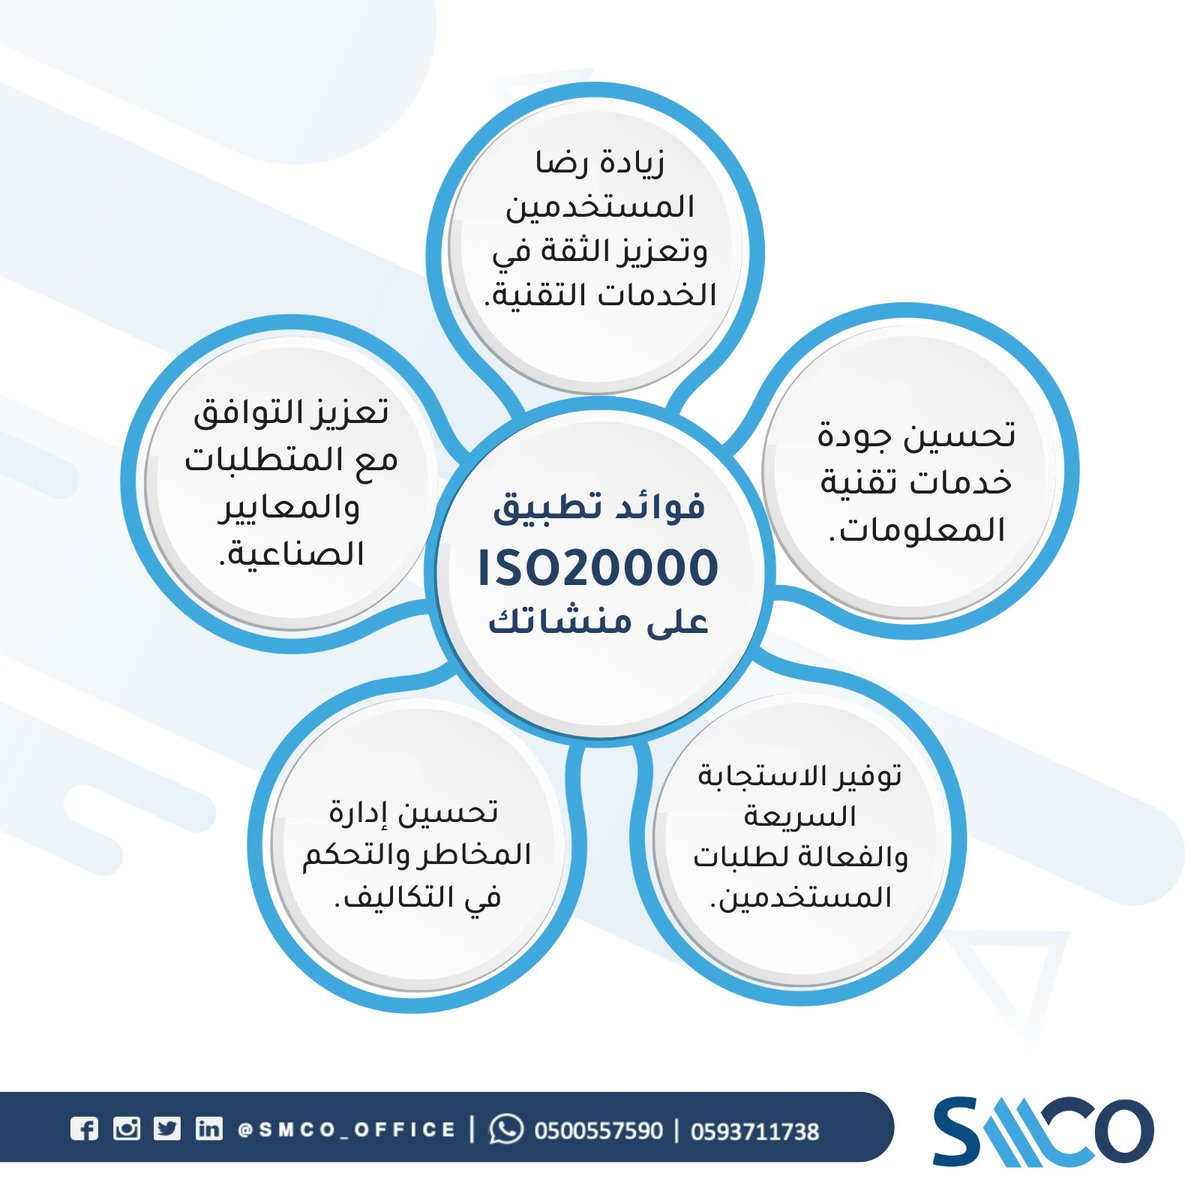 فوائد تطبيق ايزو  20000 
تطبيق إدارة الجودة لخدمات تقنية المعلومات 

#ISO20000